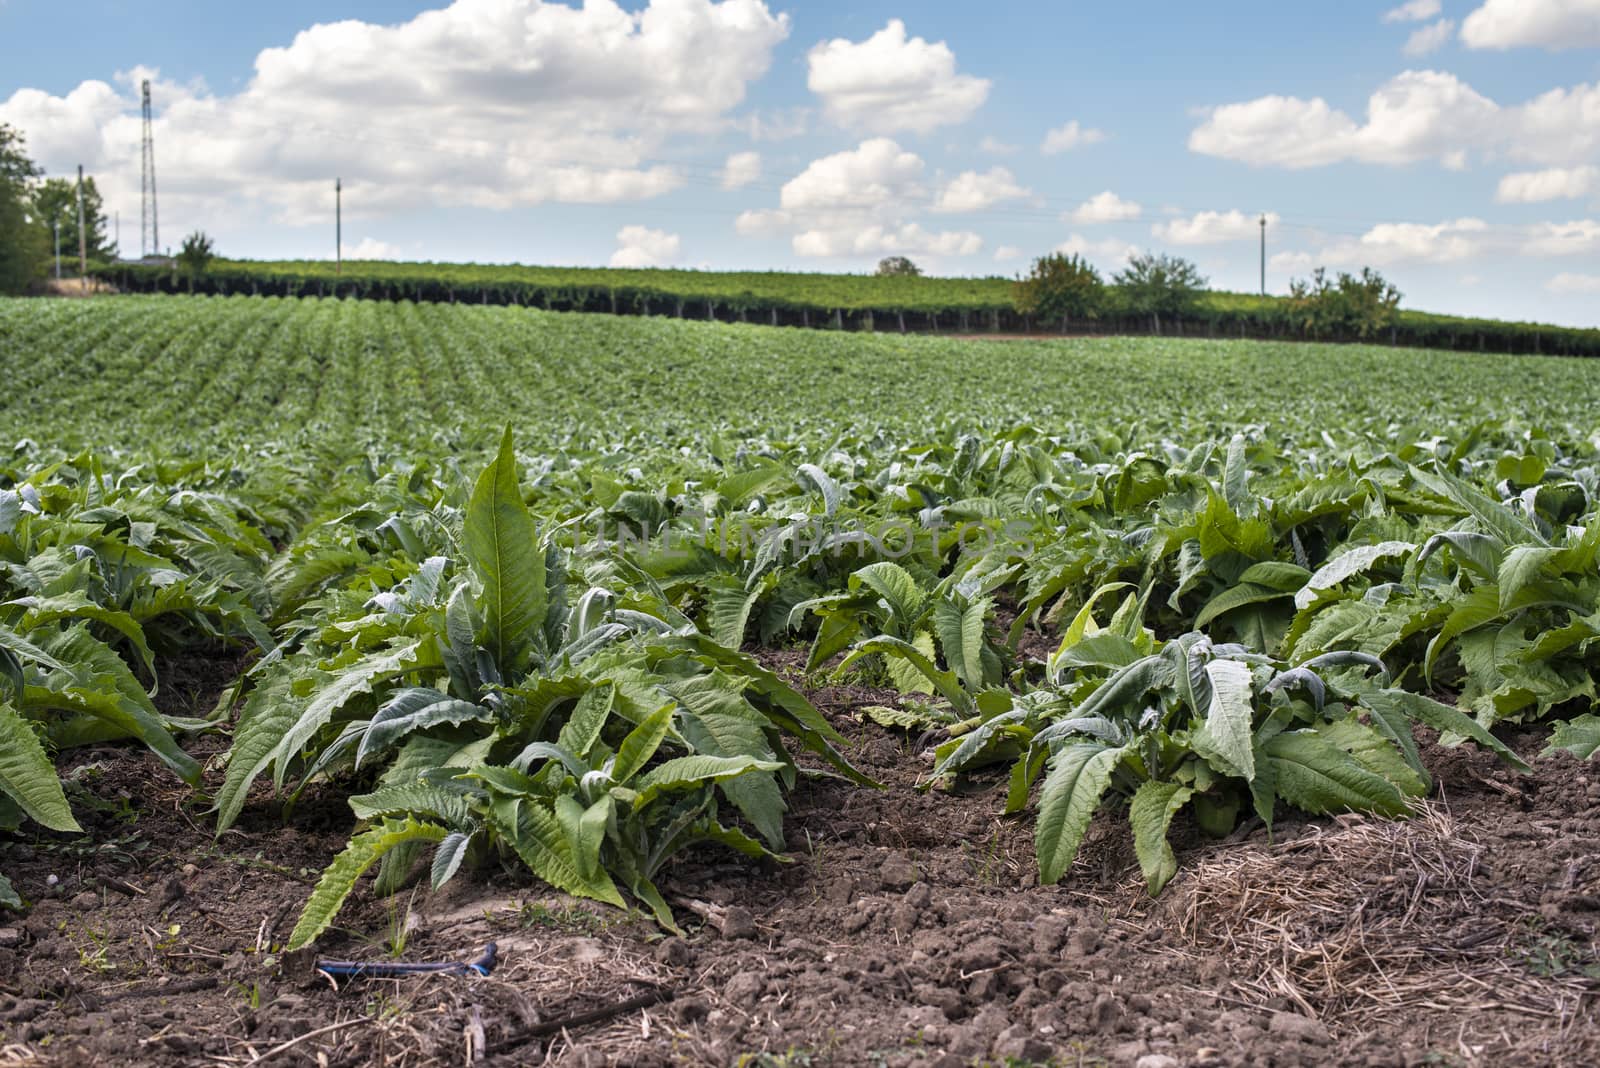 Artichoke industrial plantation in rows. Growing artichoke in a big farm.